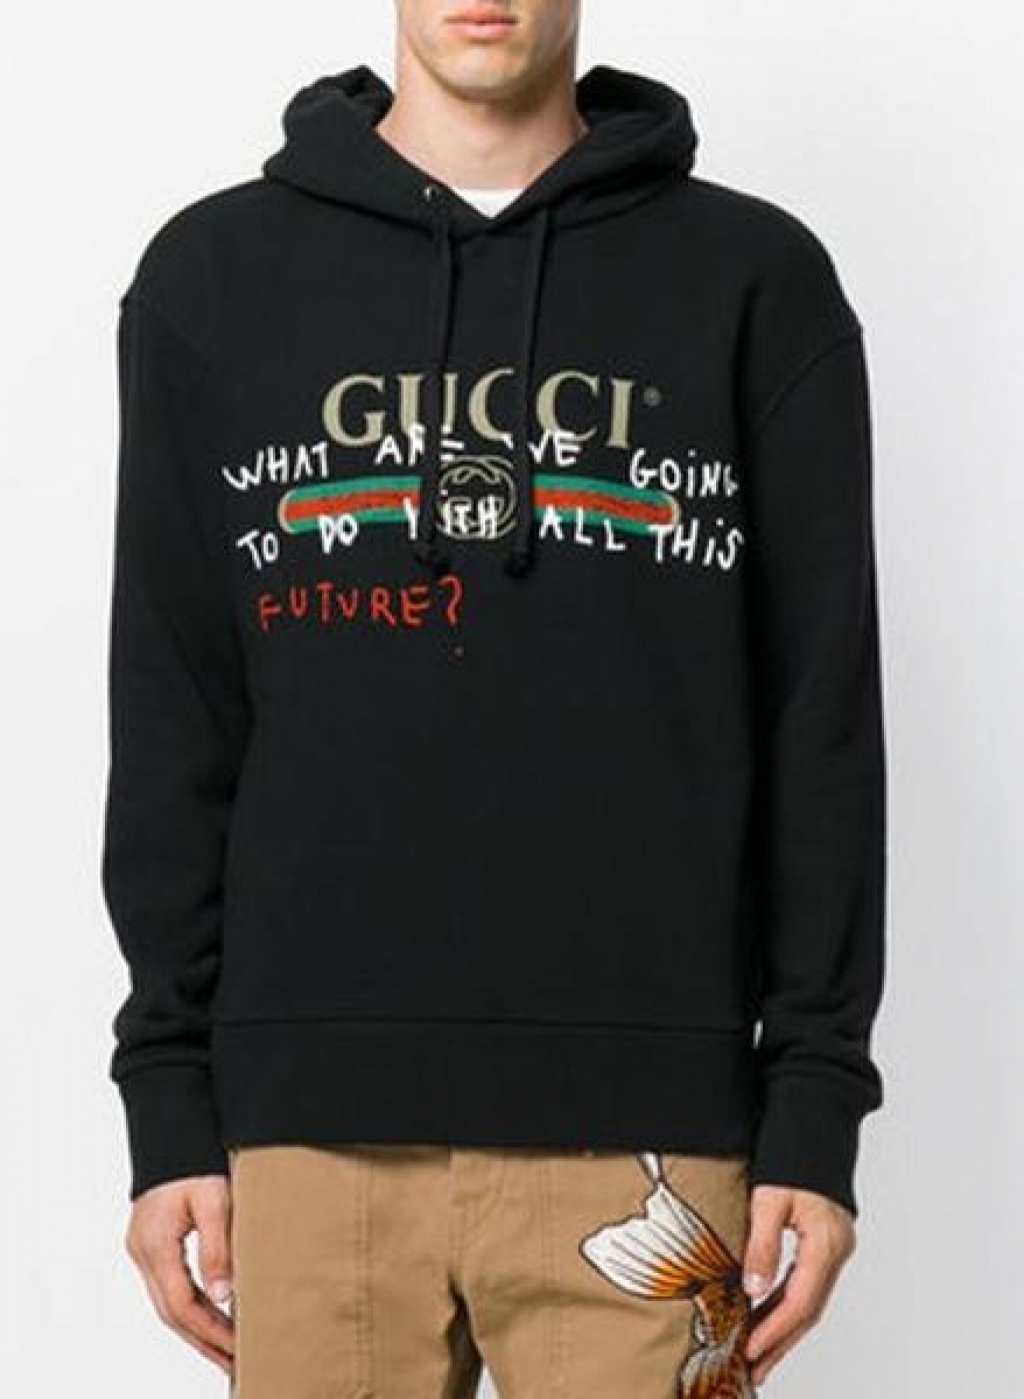 affordable hoodie brands